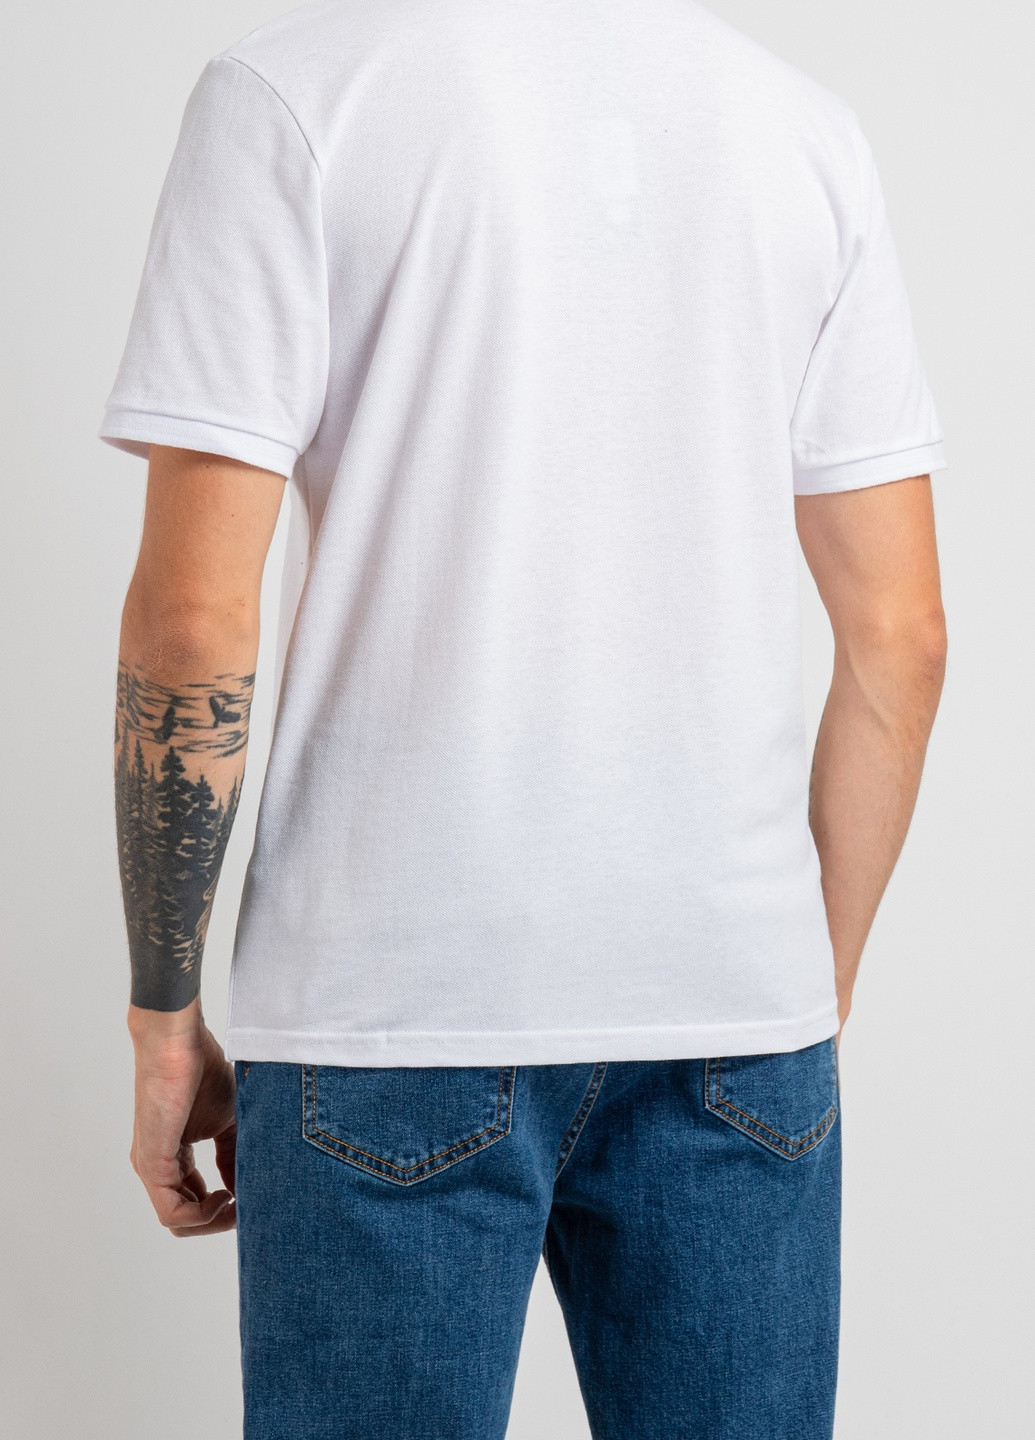 Біла чорна футболка-поло з принтом Nasa